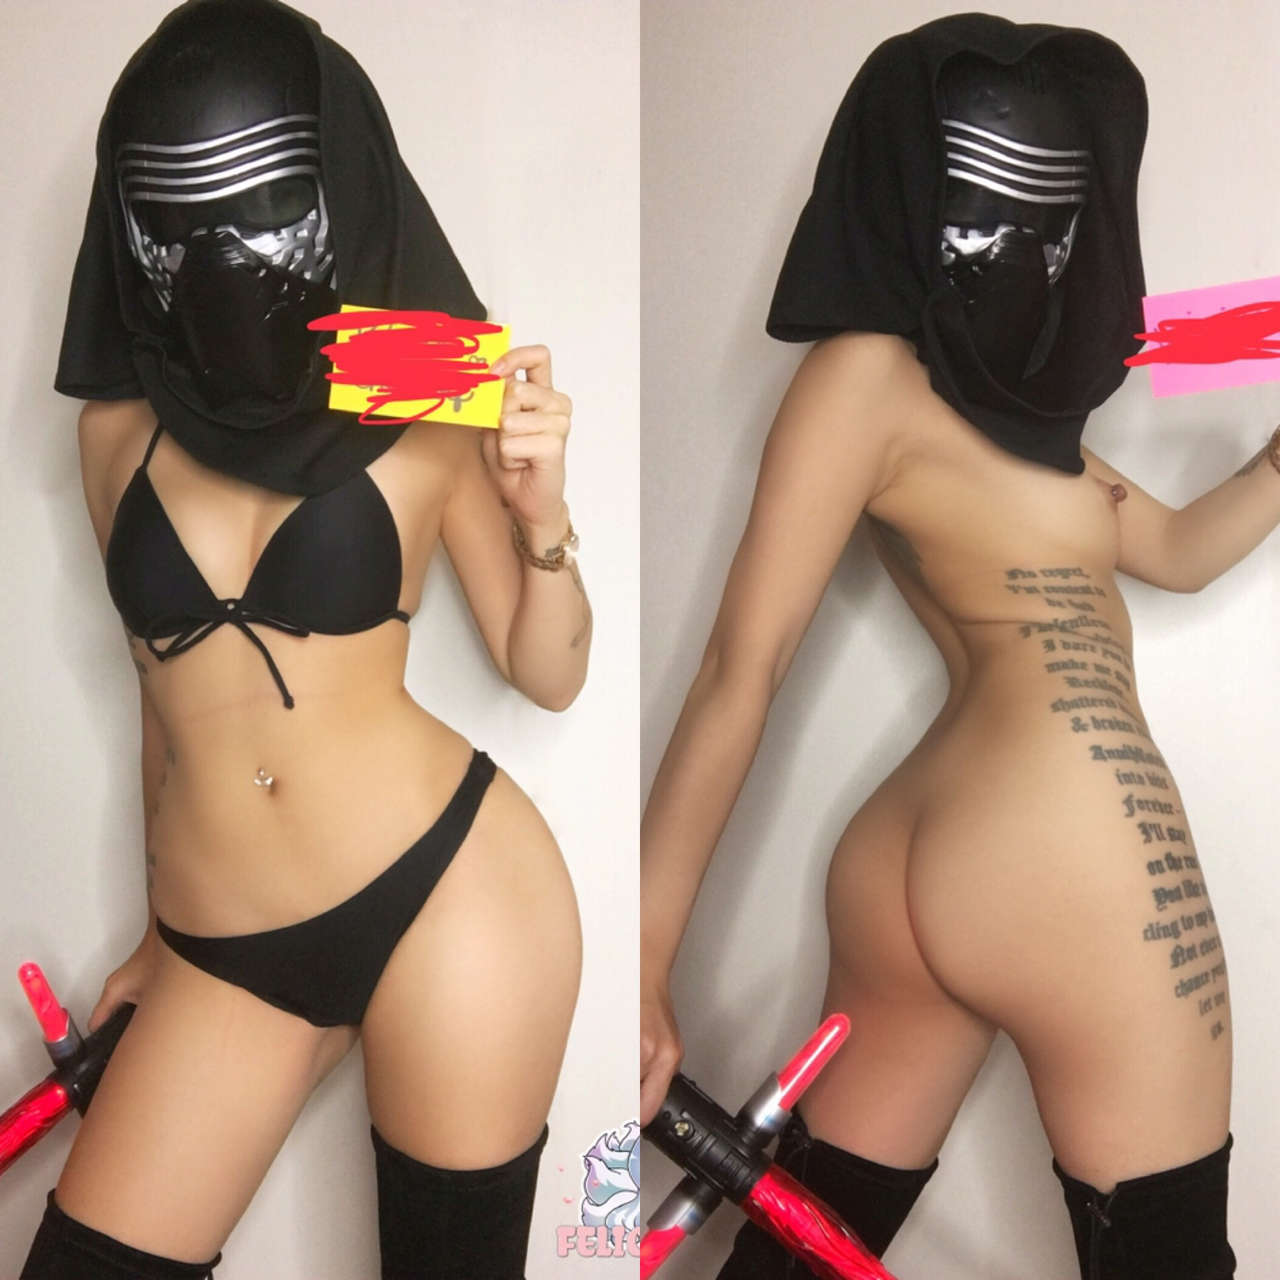 Self Bikini Kyla Ren On Off From Star Wars By Felicia Vo